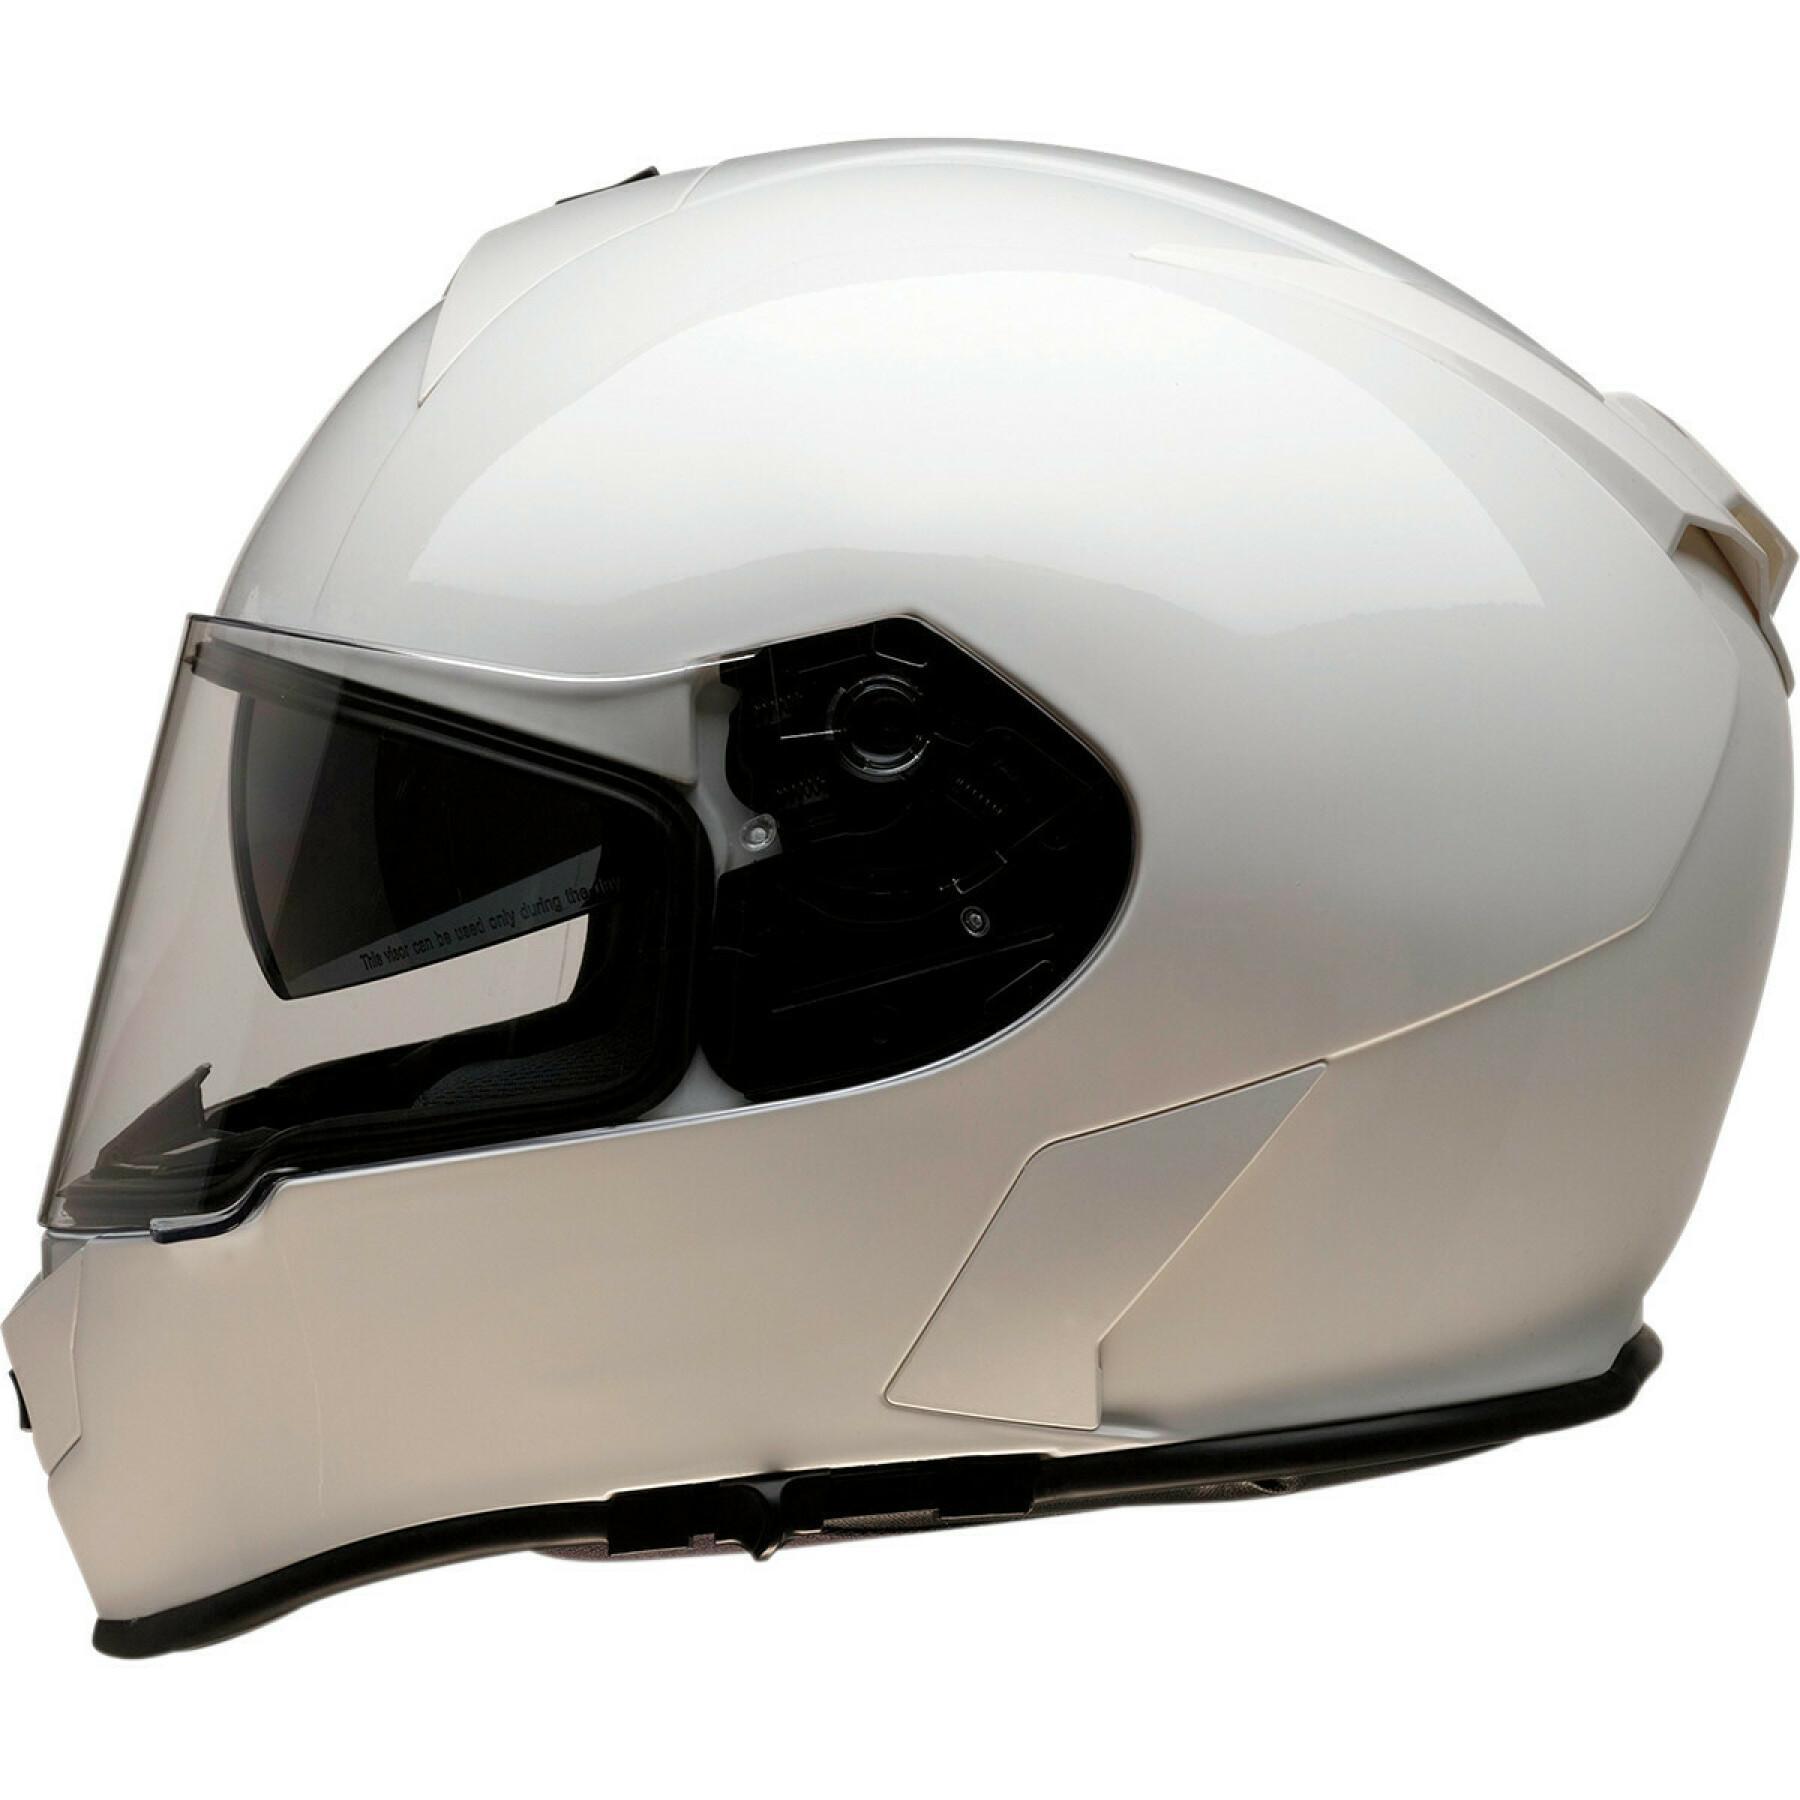 Capacete de motocicleta facial completo Z1R warrant white